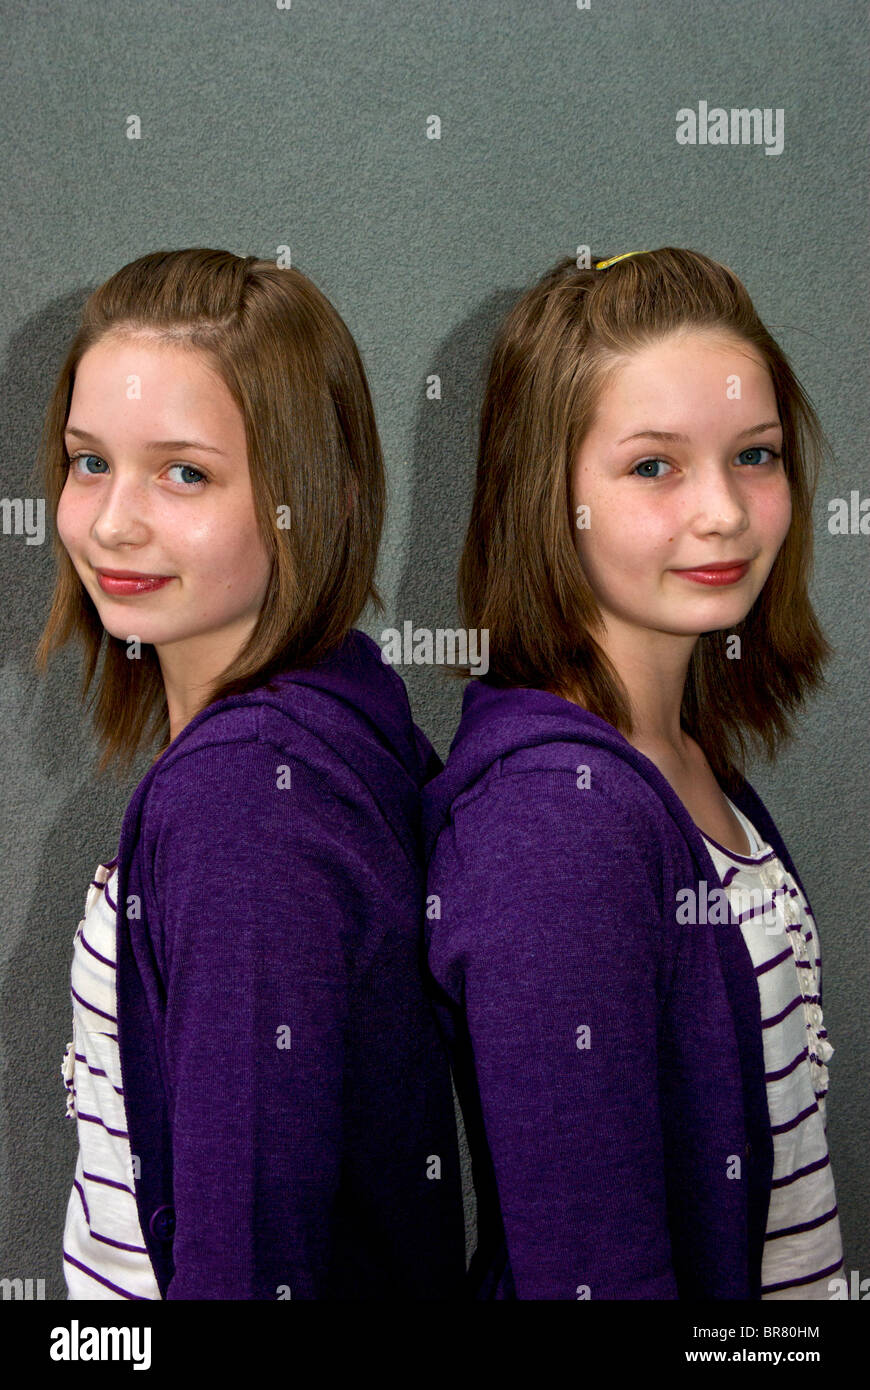 Identica femminile adolescente gemelli vestiti uguali nello stesso  abbigliamento acconciature abiti Foto stock - Alamy